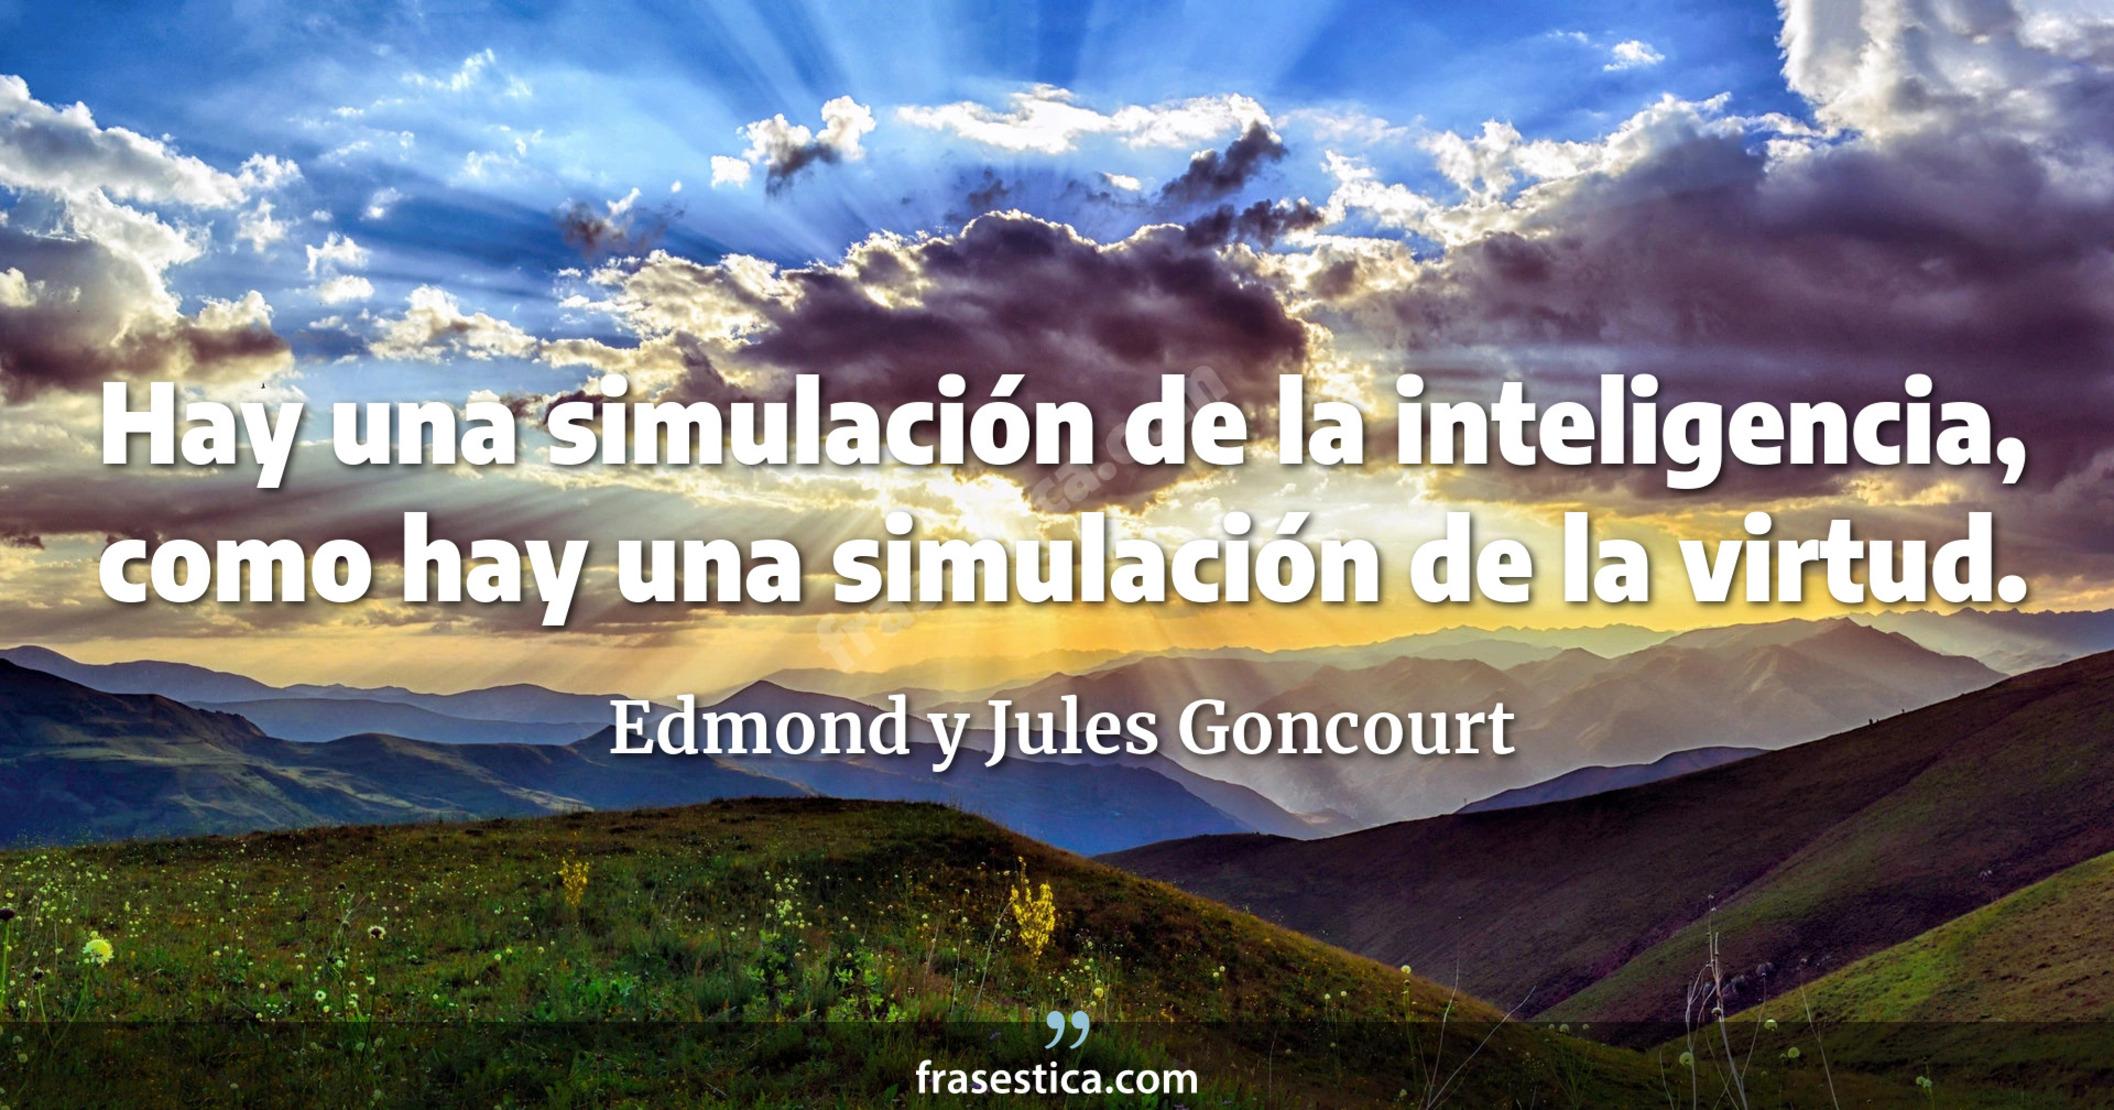 Hay una simulación de la inteligencia, como hay una simulación de la virtud. - Edmond y Jules Goncourt